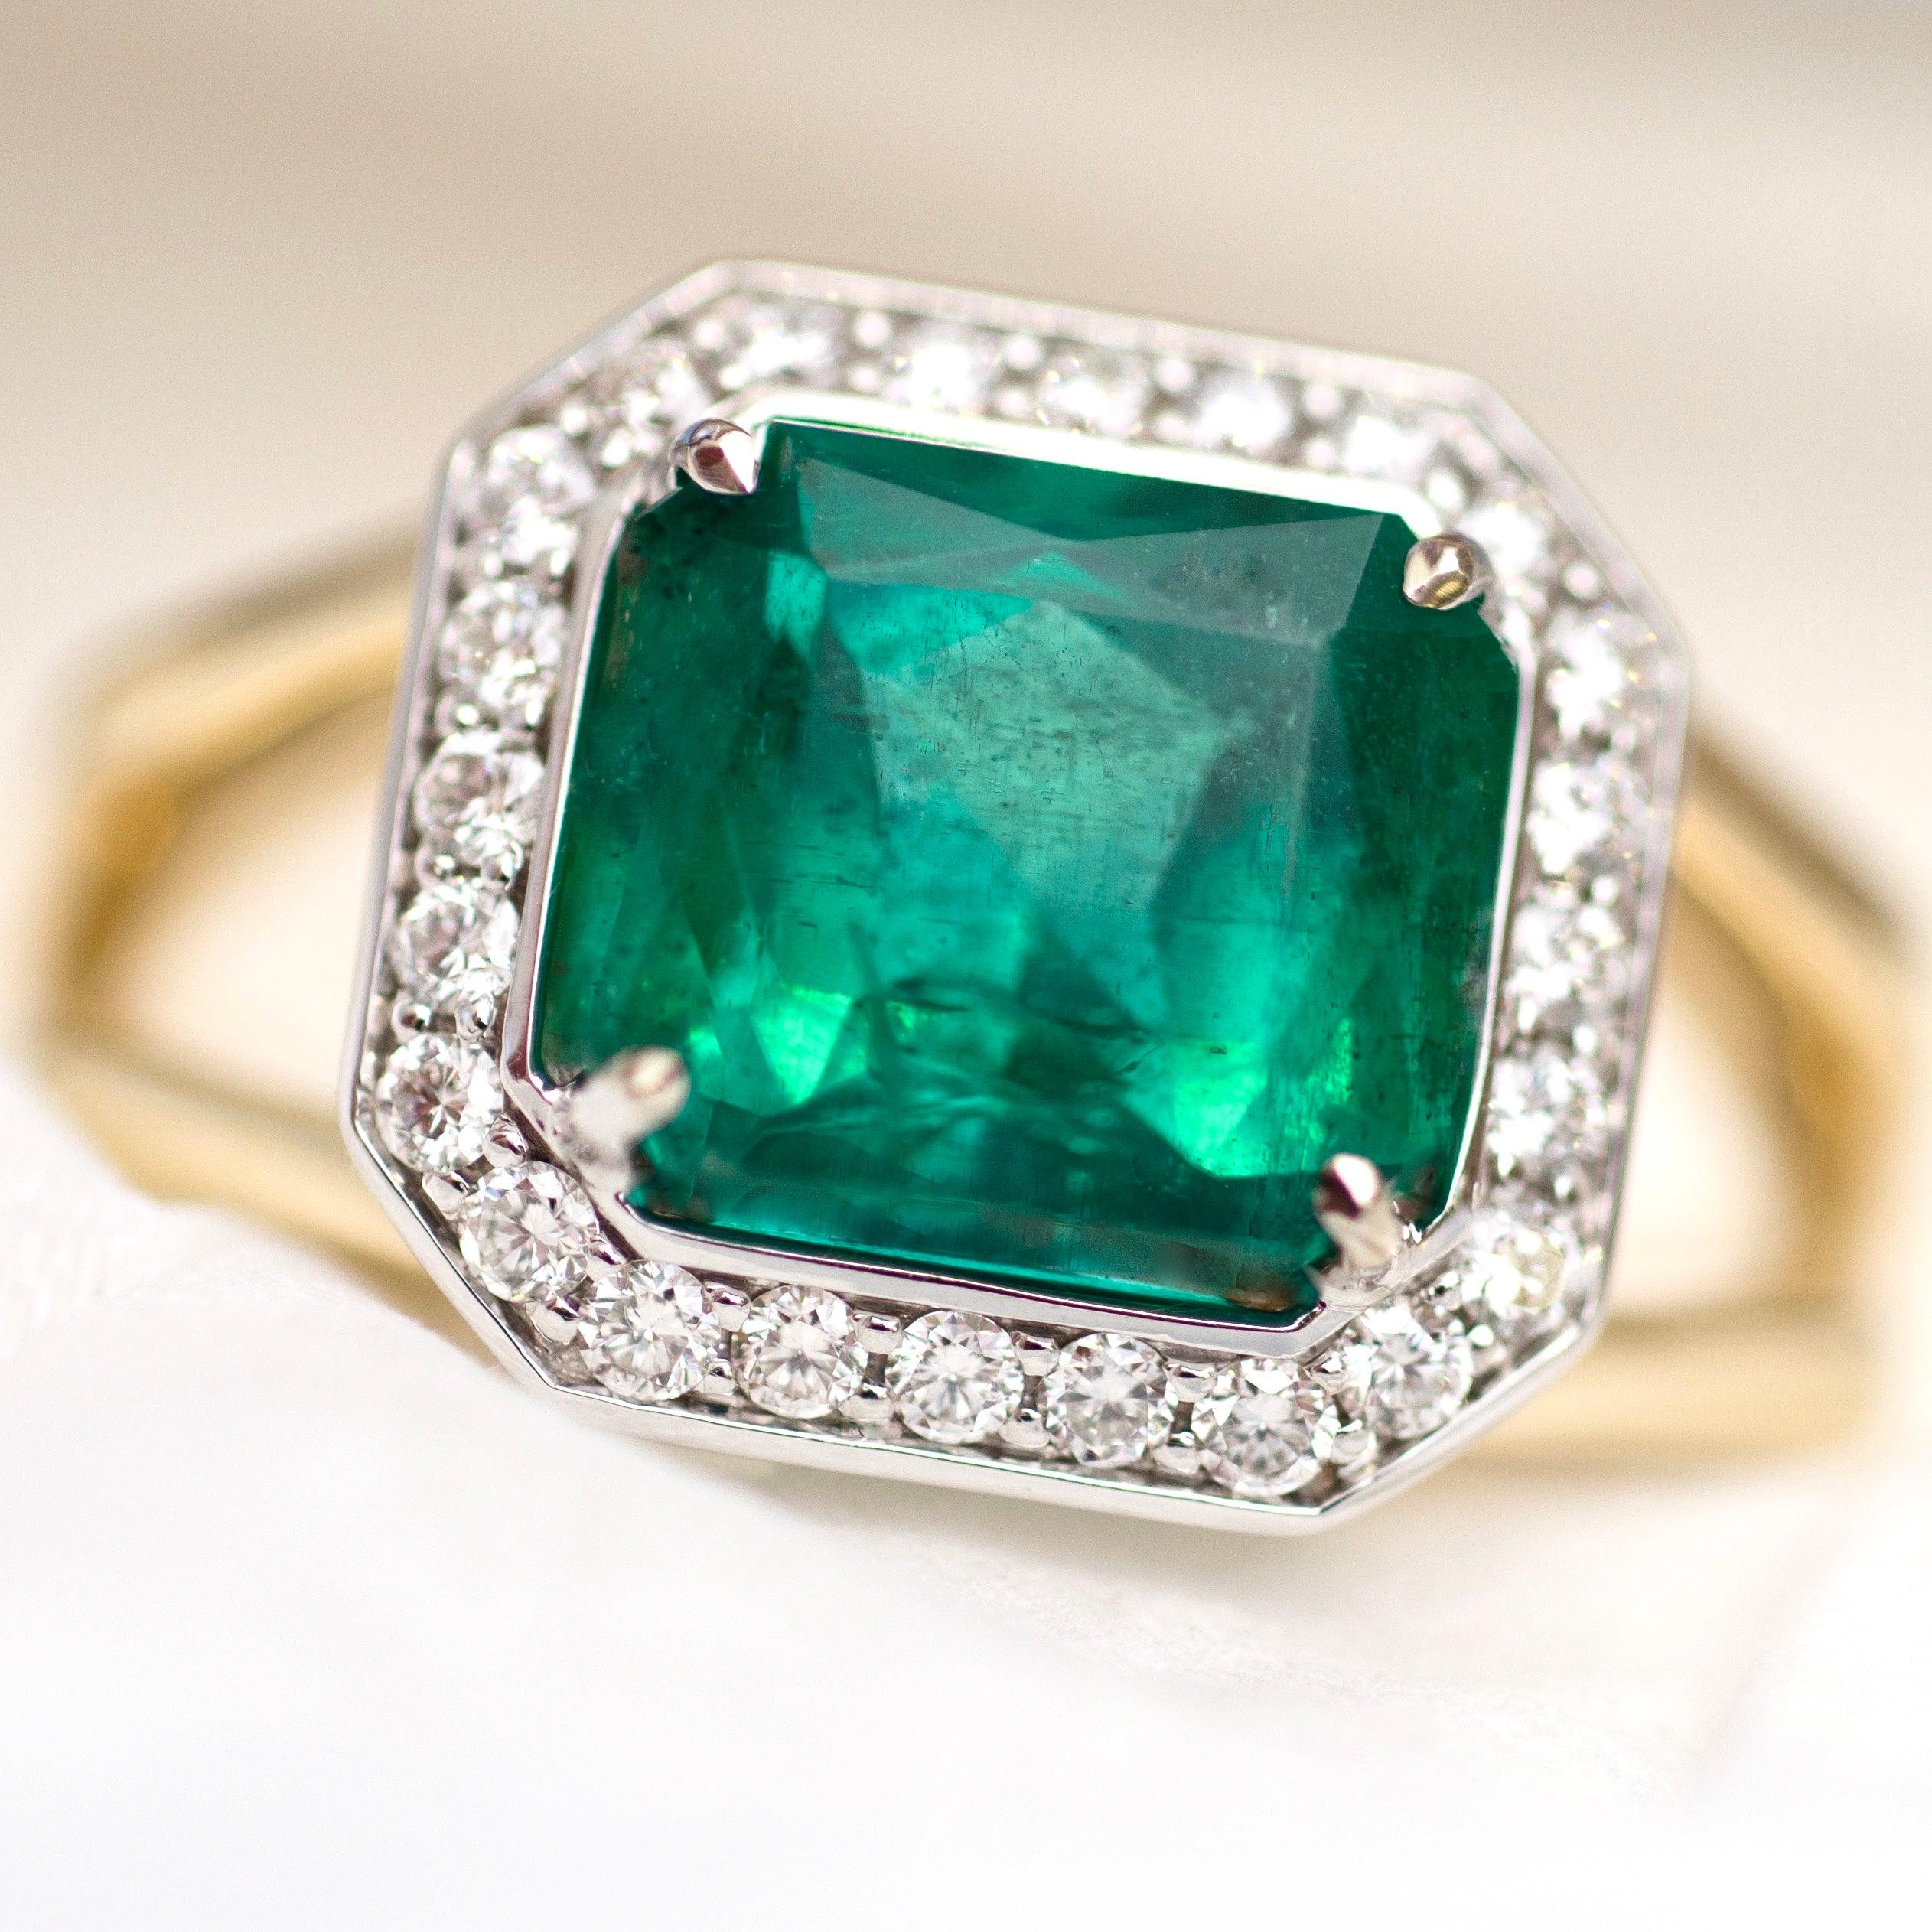 For Sale:  3 Carat Intense Green Natural Emerald Diamonds 18 Karat Yellow White Gold Ring 4